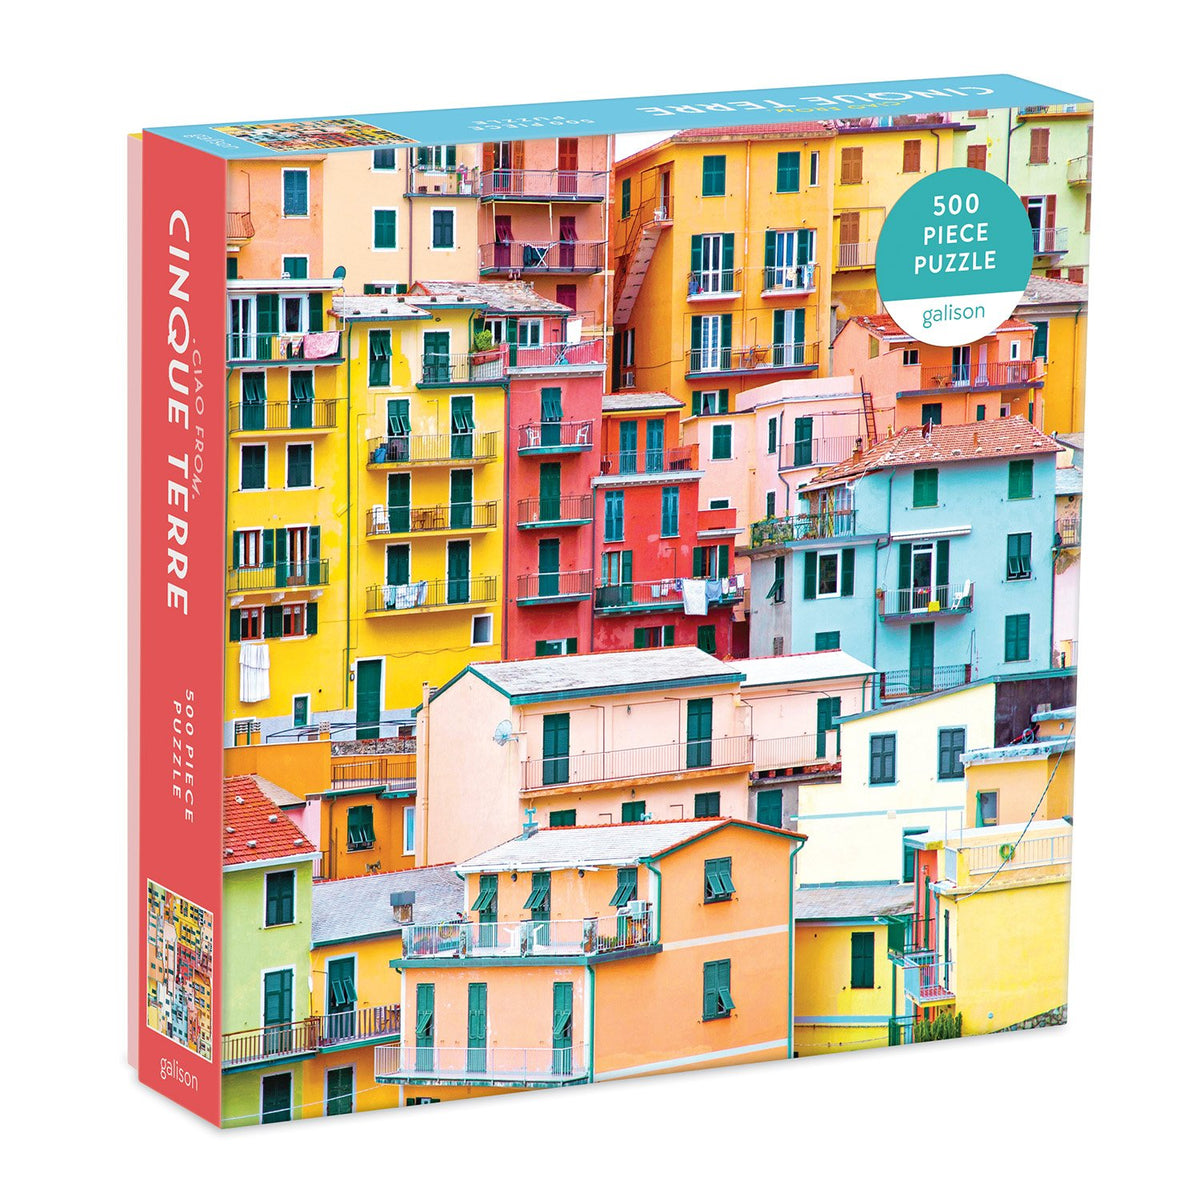 Puzzle Italie colorée, 500 pieces